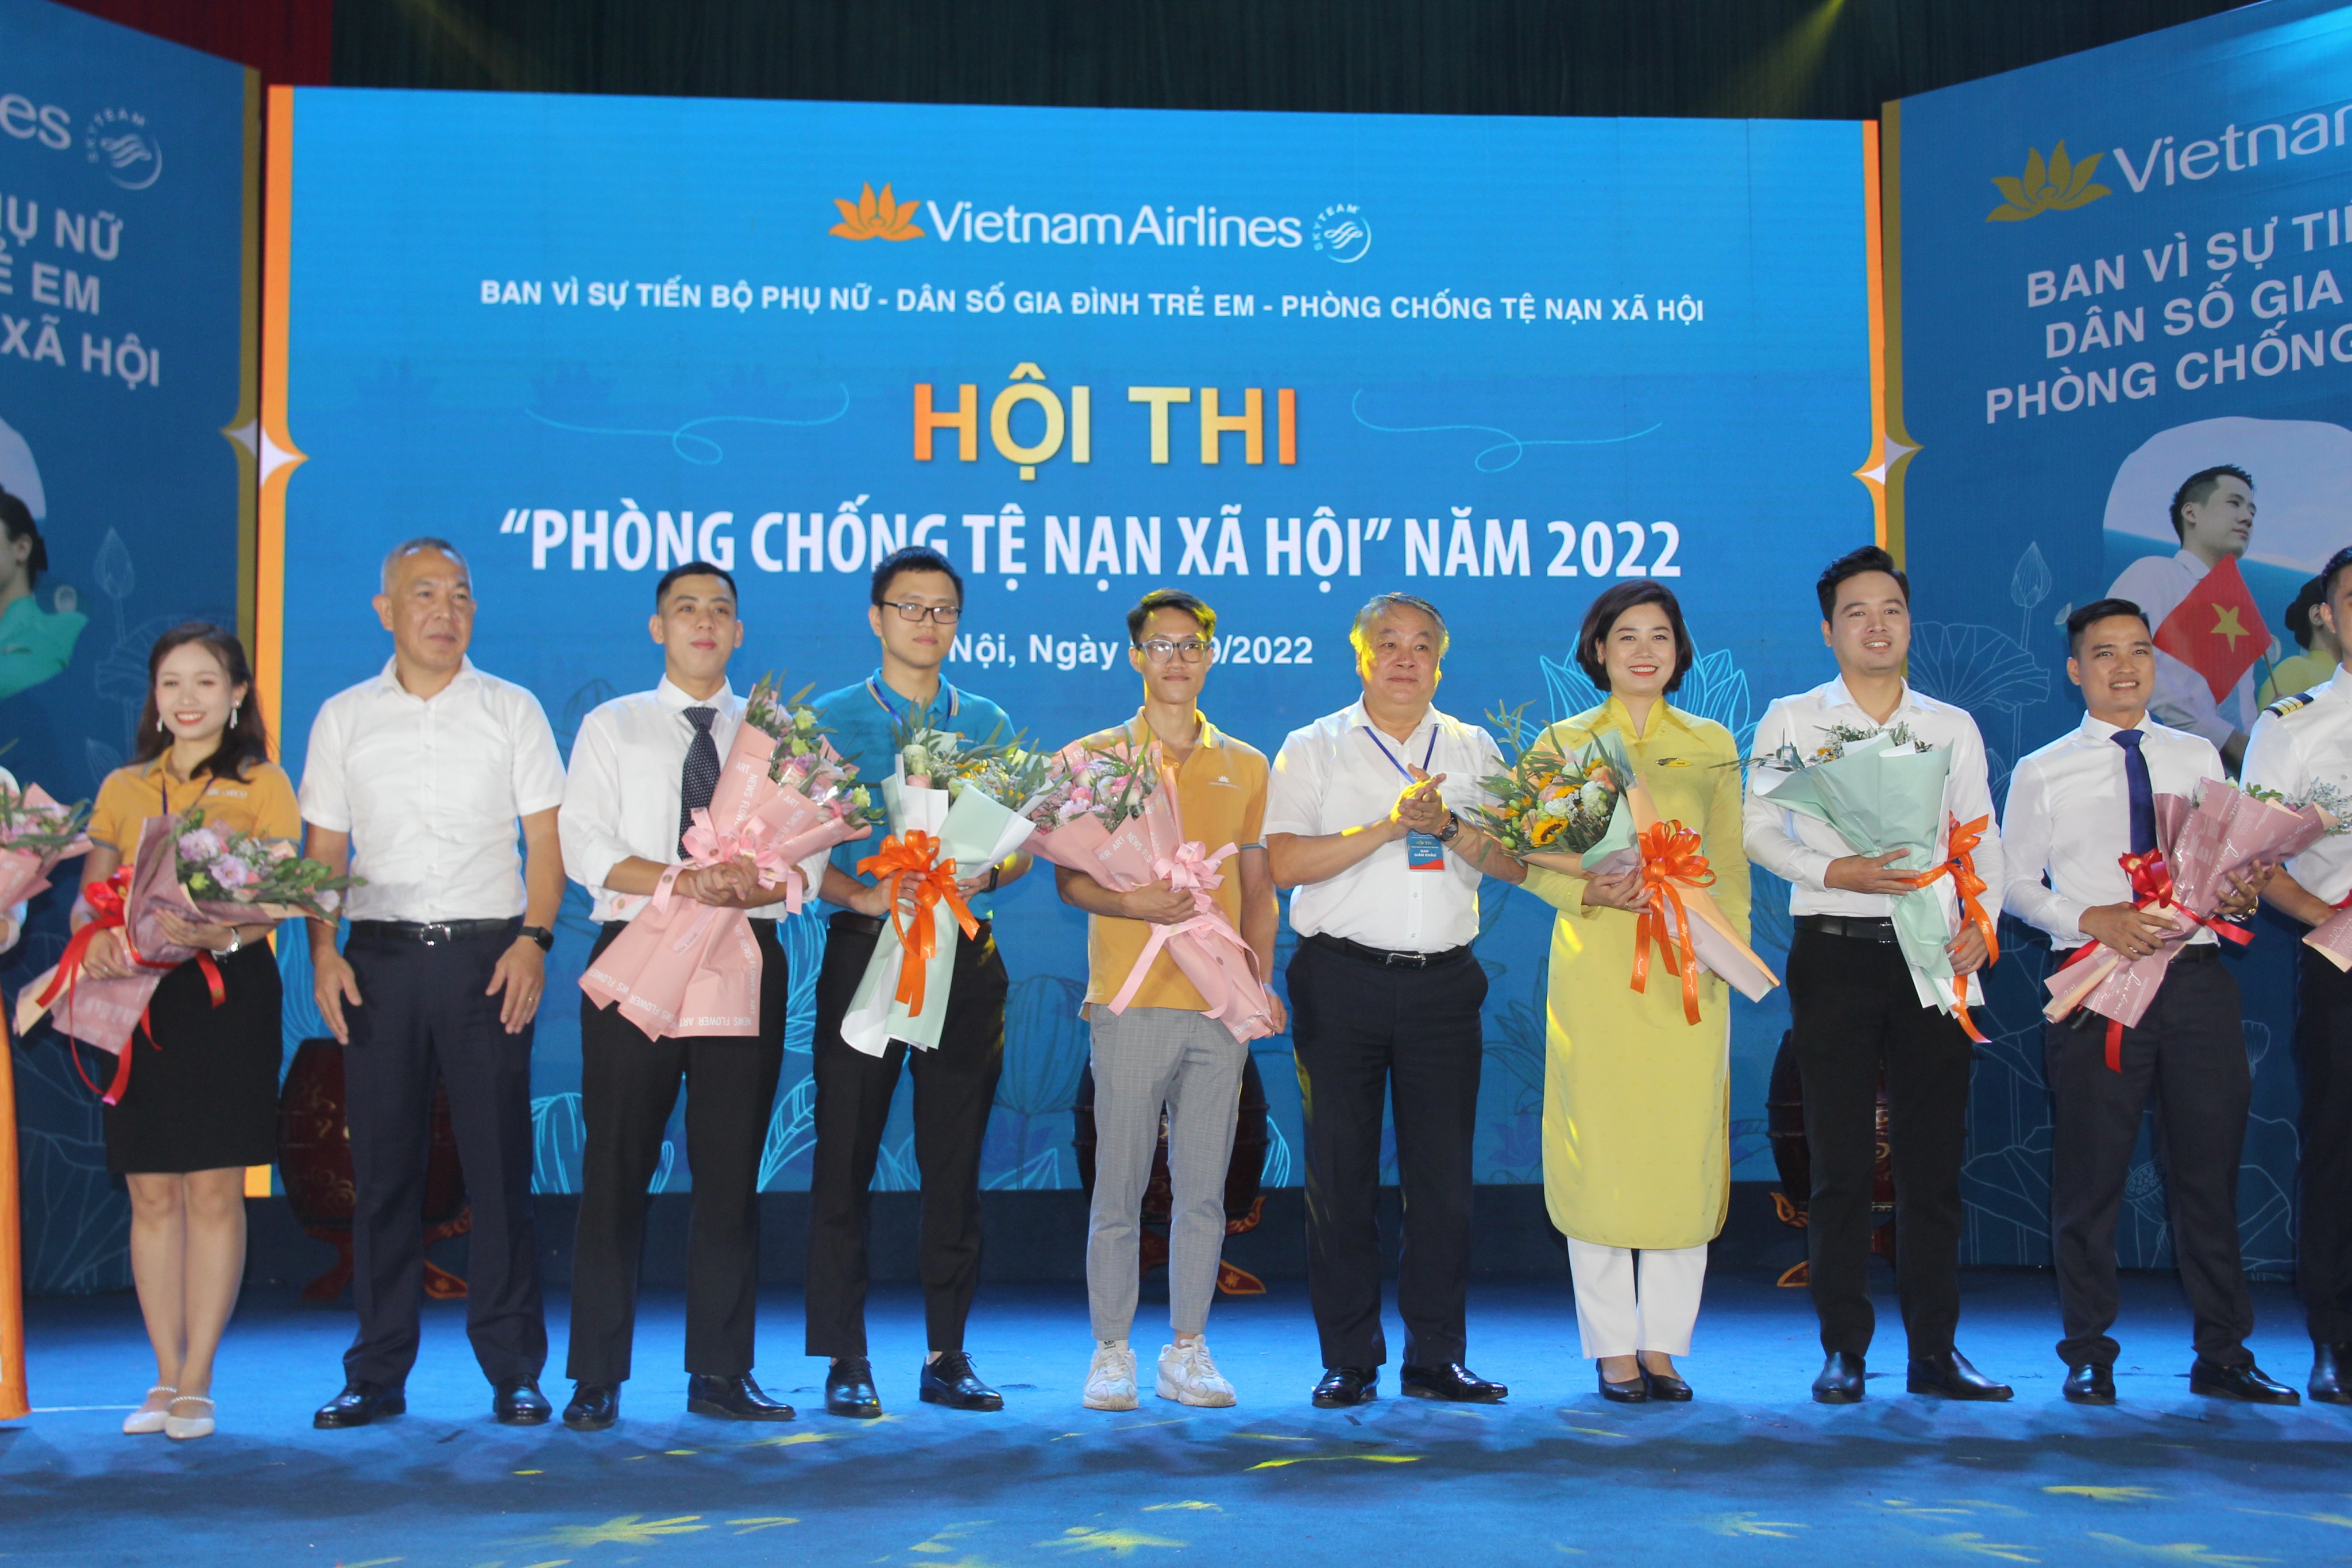 Vietnam Airlines tổ chức Hội thi “Phòng chống tệ nạn xã hội” năm 2022